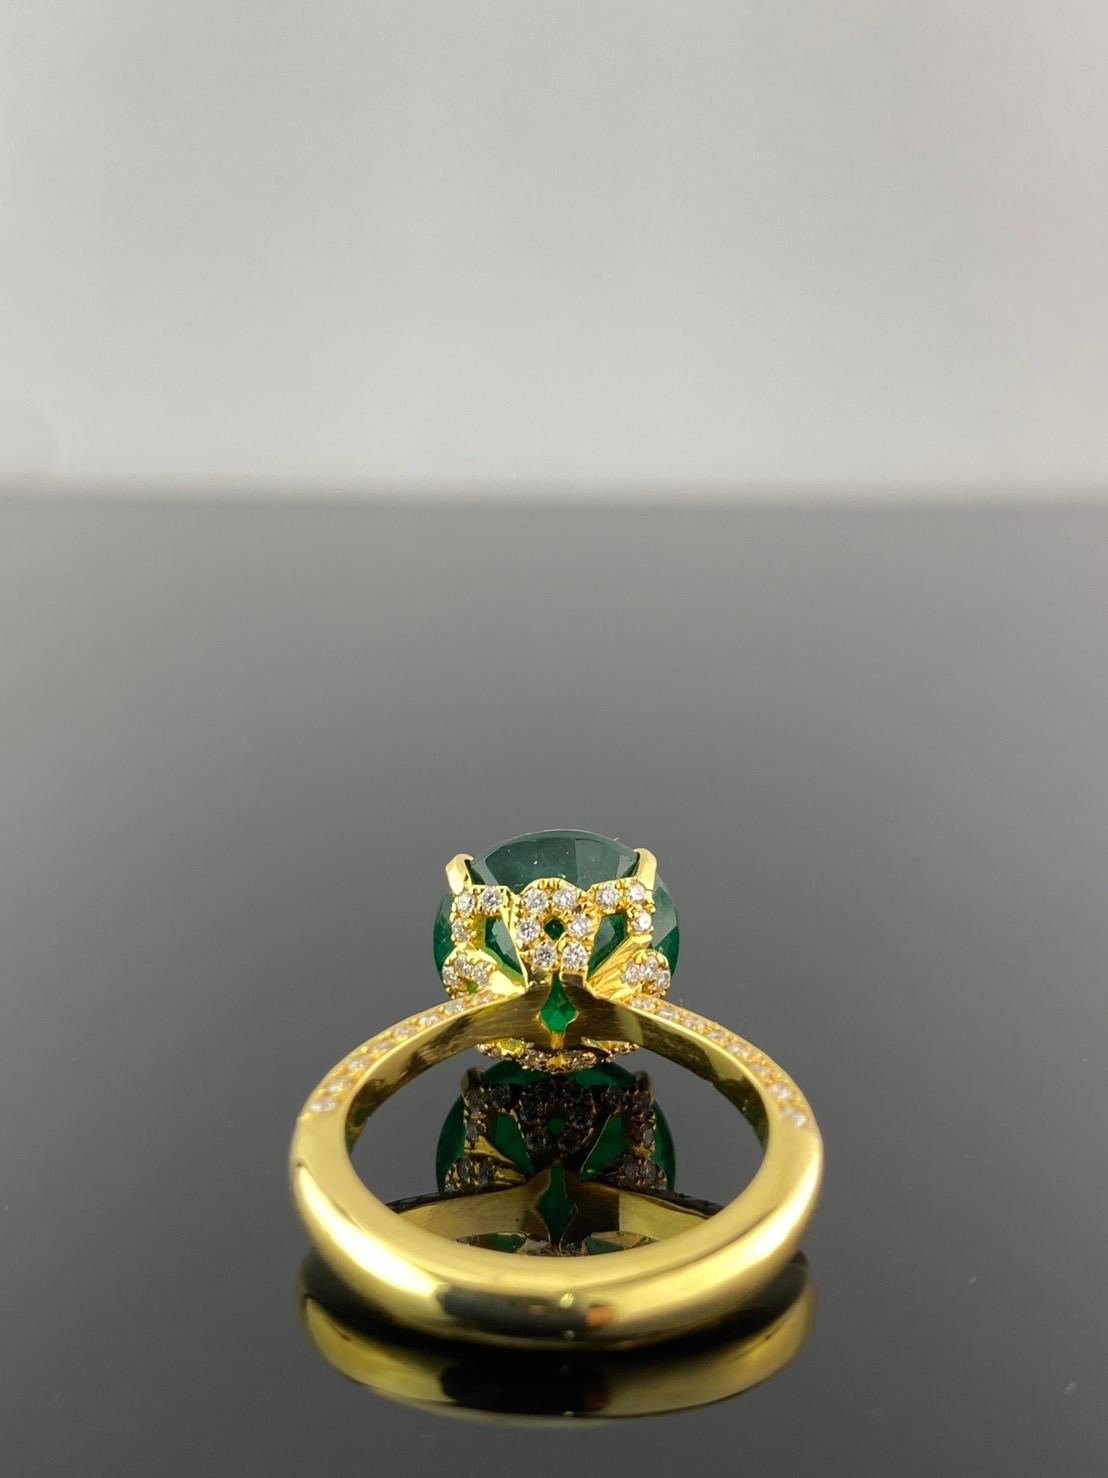 Einzigartiger Verlobungsring mit 6,70 Karat rundem sambischem Smaragd und 0,6 Karat weißem Diamant. Der natürliche Smaragd ist transparent, mit einem schönen Glanz und einer idealen lebendigen grünen Farbe. Der Ring hat derzeit die Größe US 7, kann